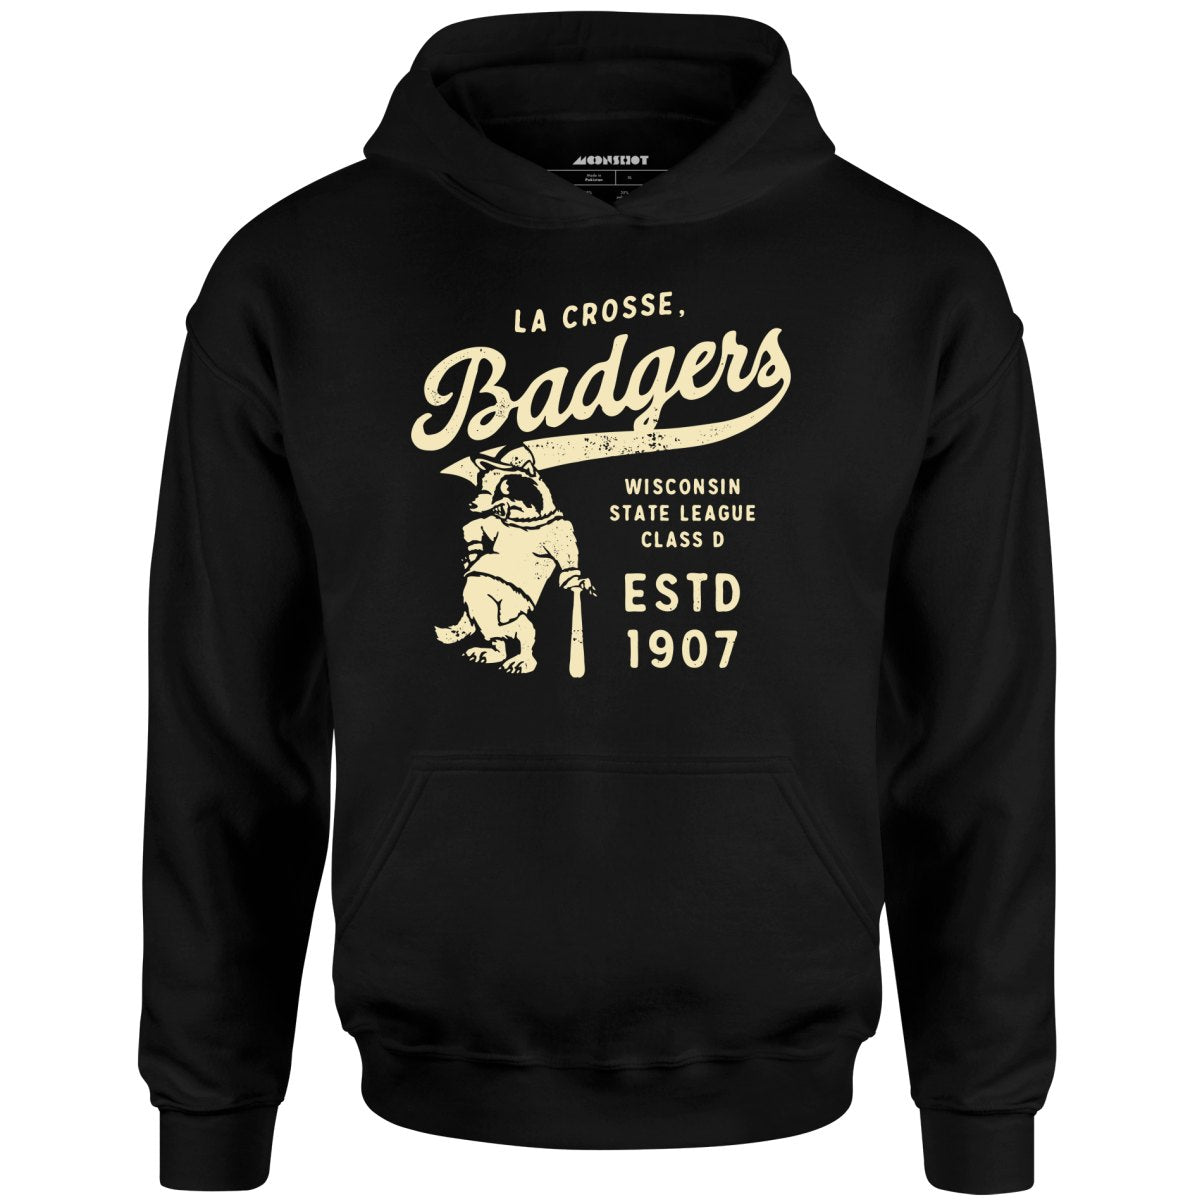 La Crosse Badgers - Wisconsin - Vintage Defunct Baseball Teams - Unisex Hoodie